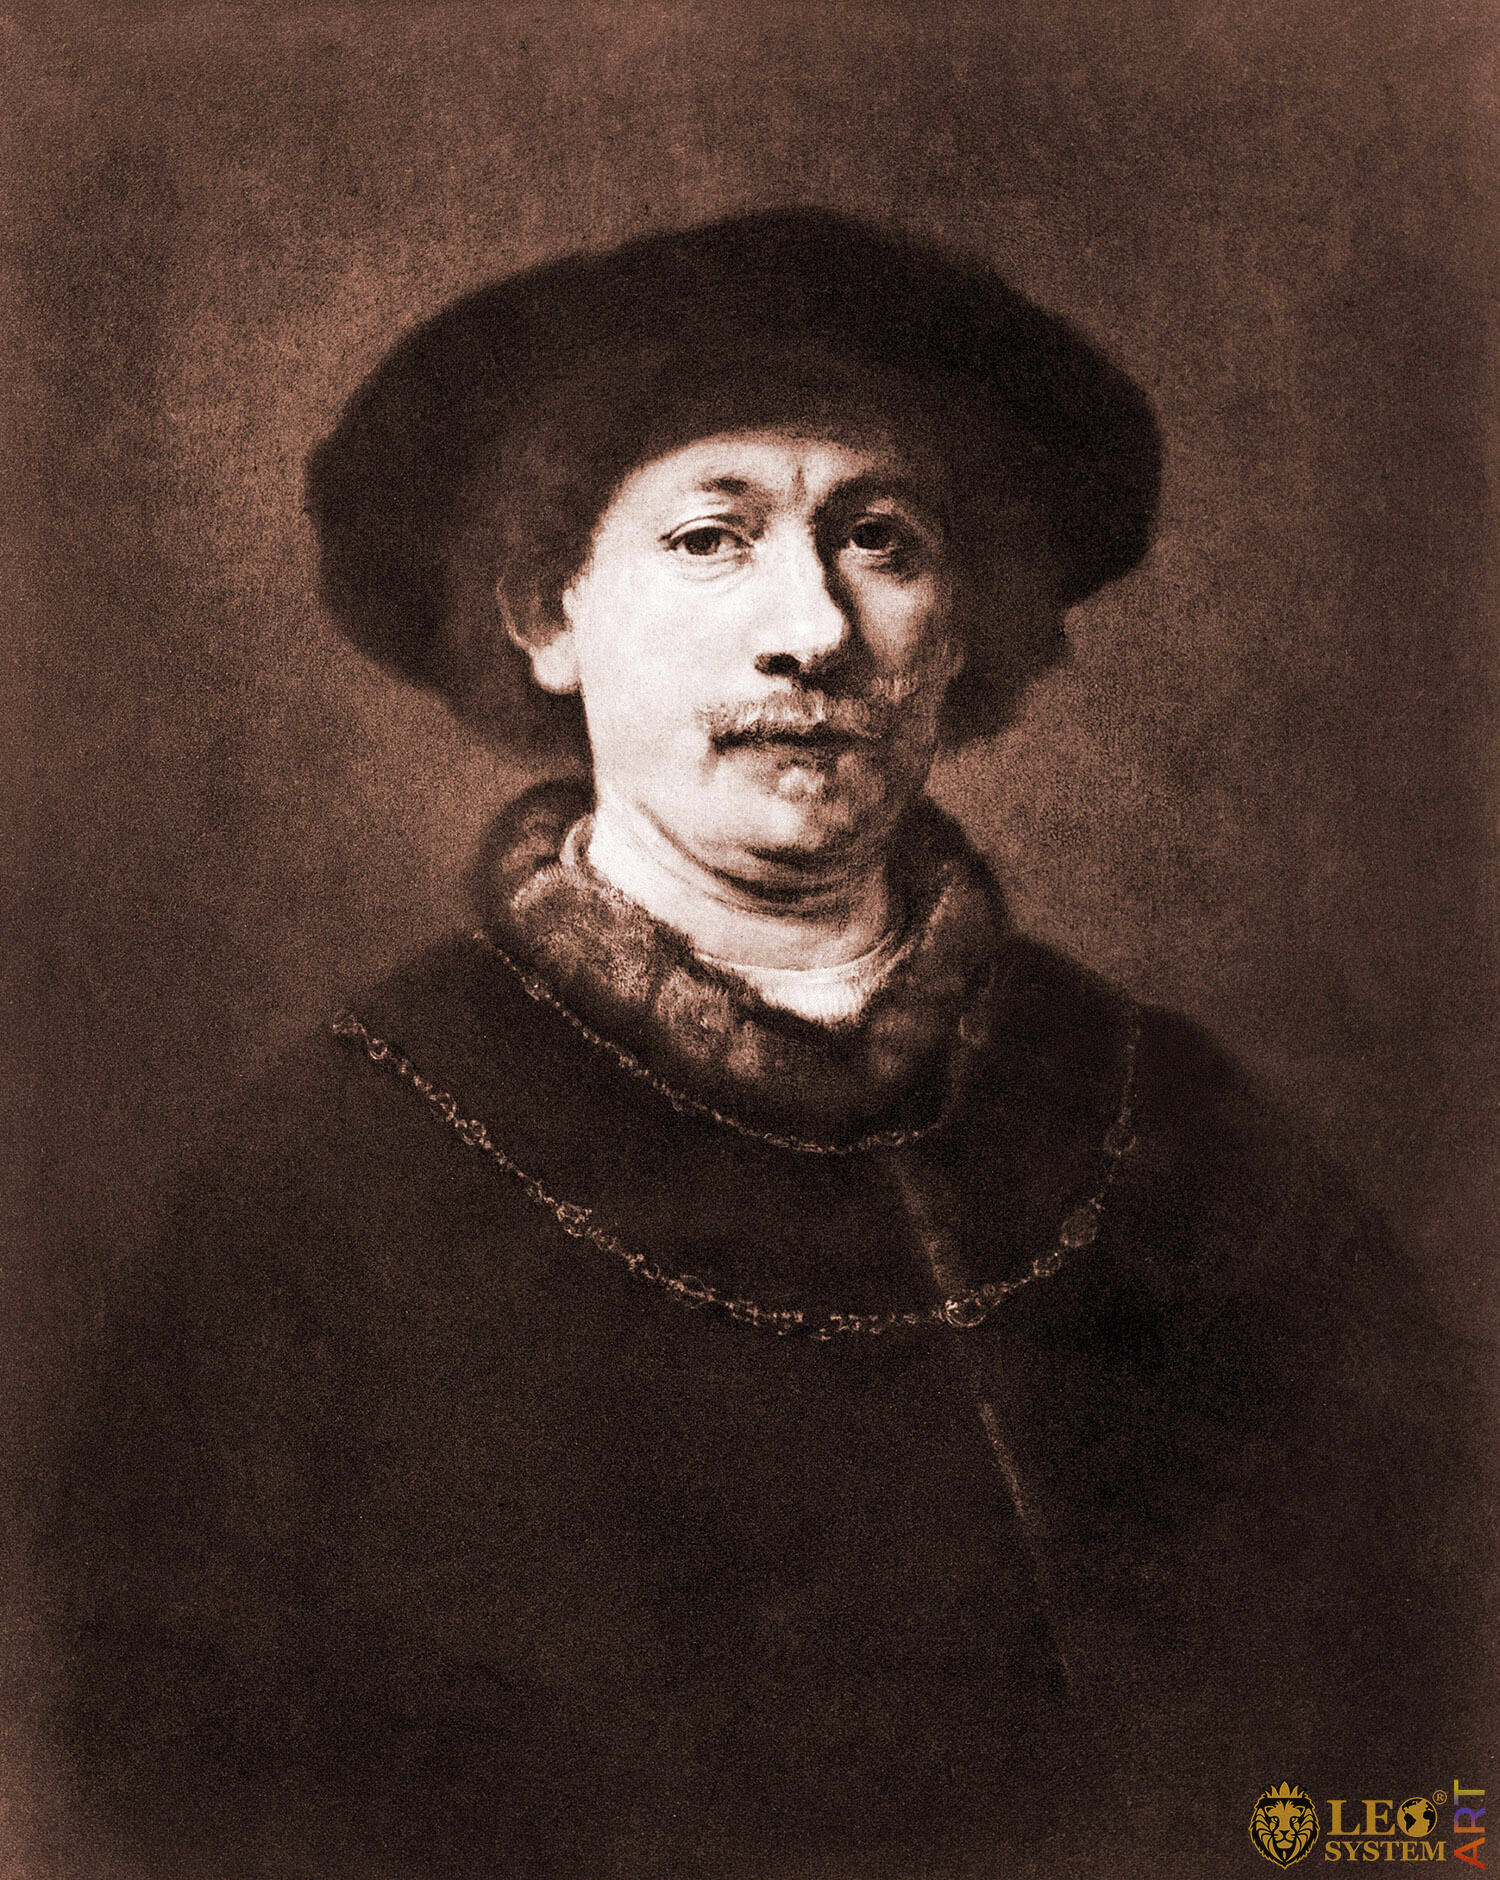 Rembrandt van Rijn 1606-1669. Engraving Of 1643 Self-Portrait, Painter: Rembrandt van Rijn, 1643, Amsterdam, Netherlands, Original painting